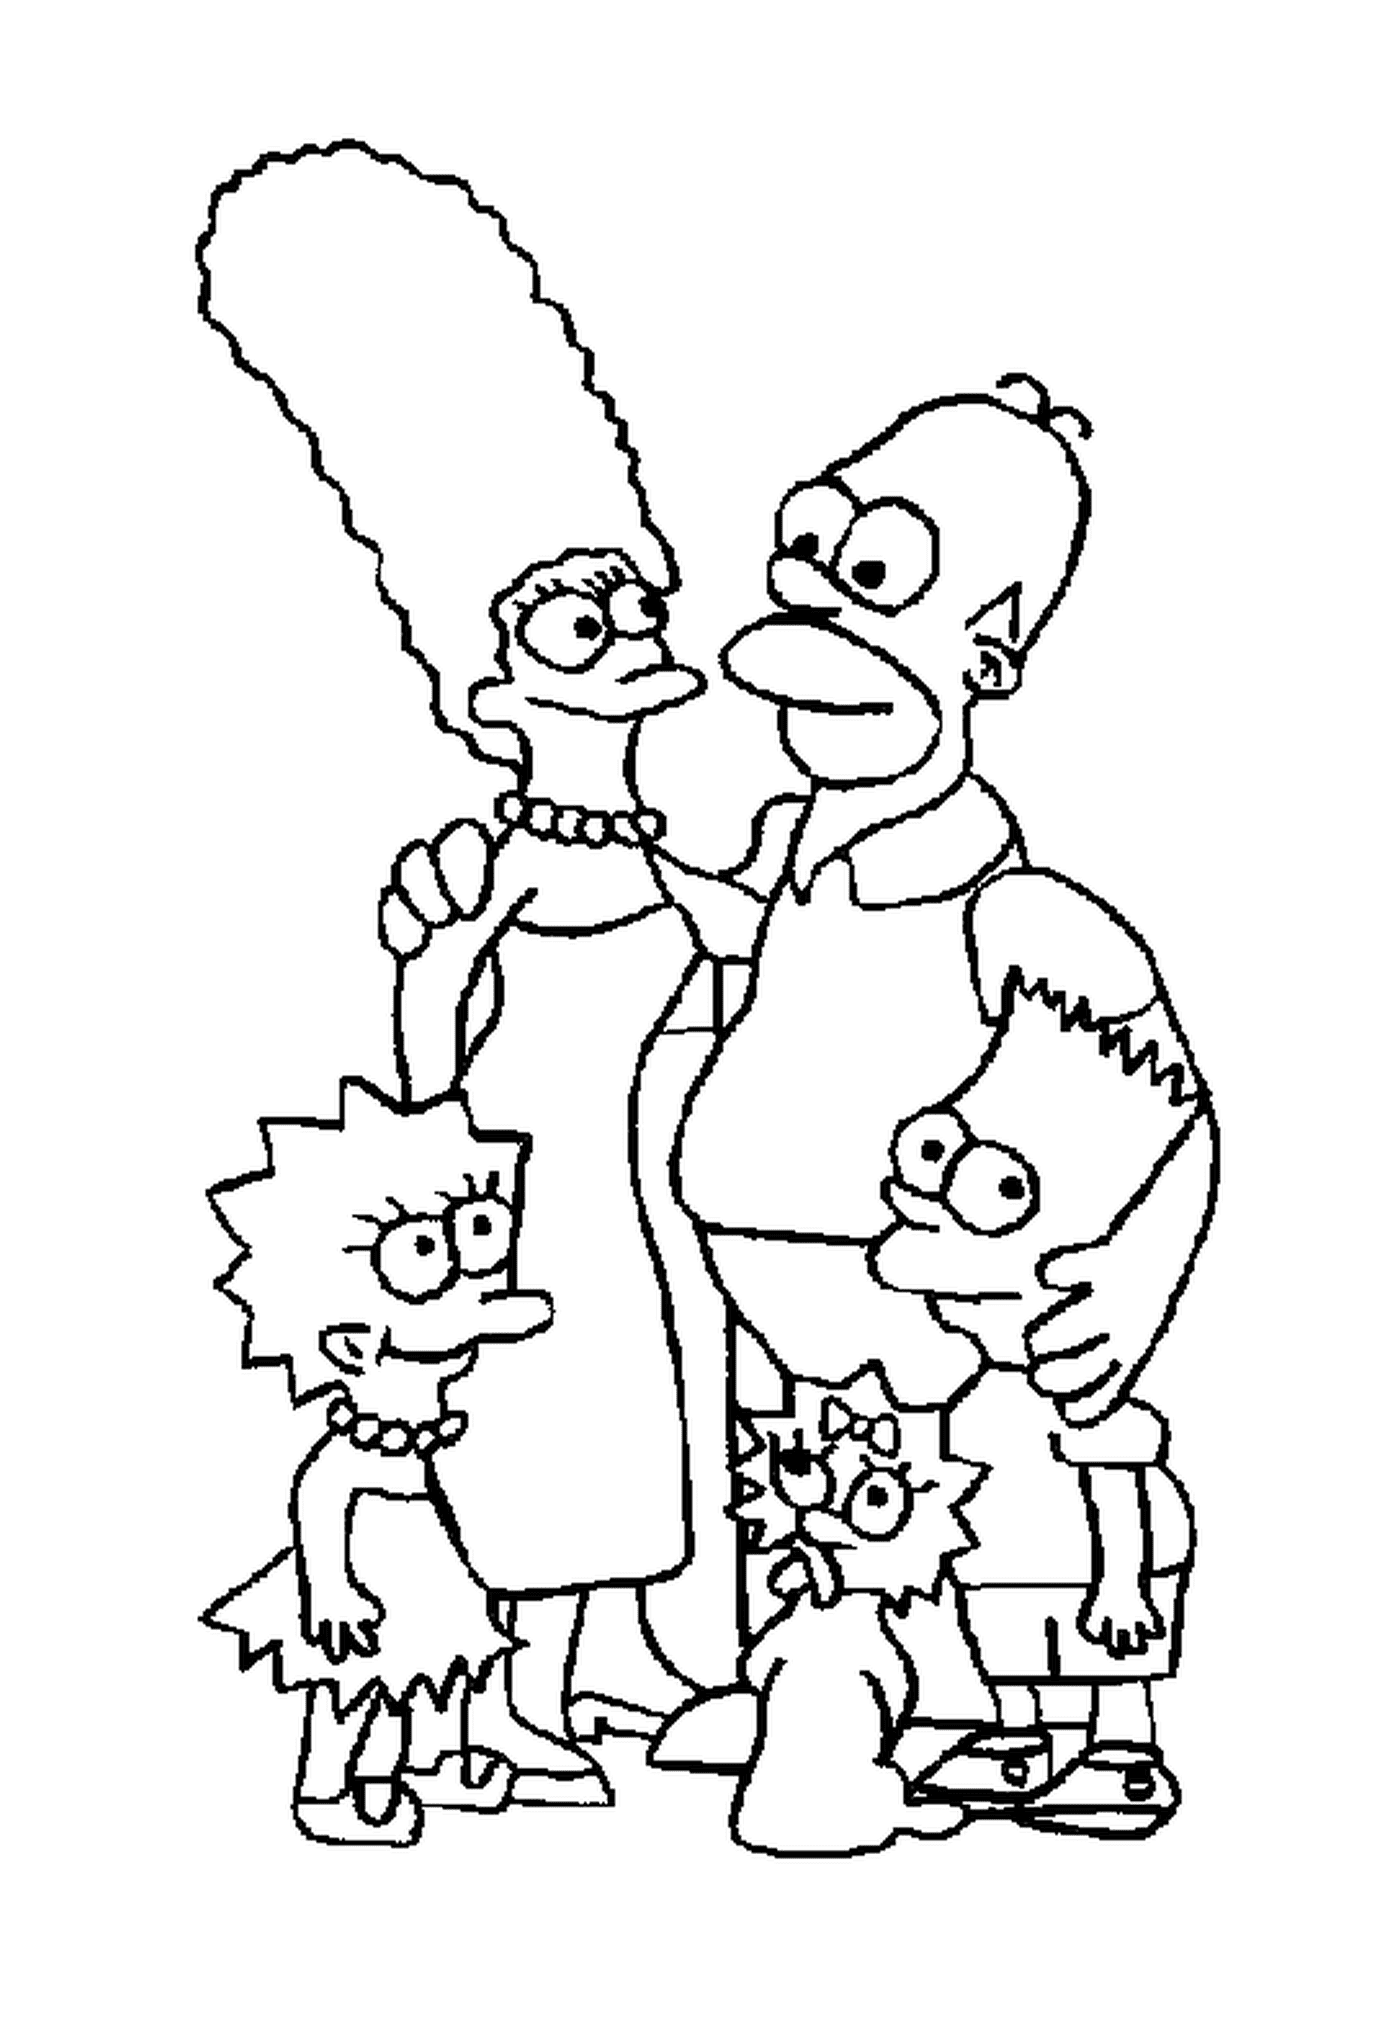  Die Familie Simpson ist wiedervereint 